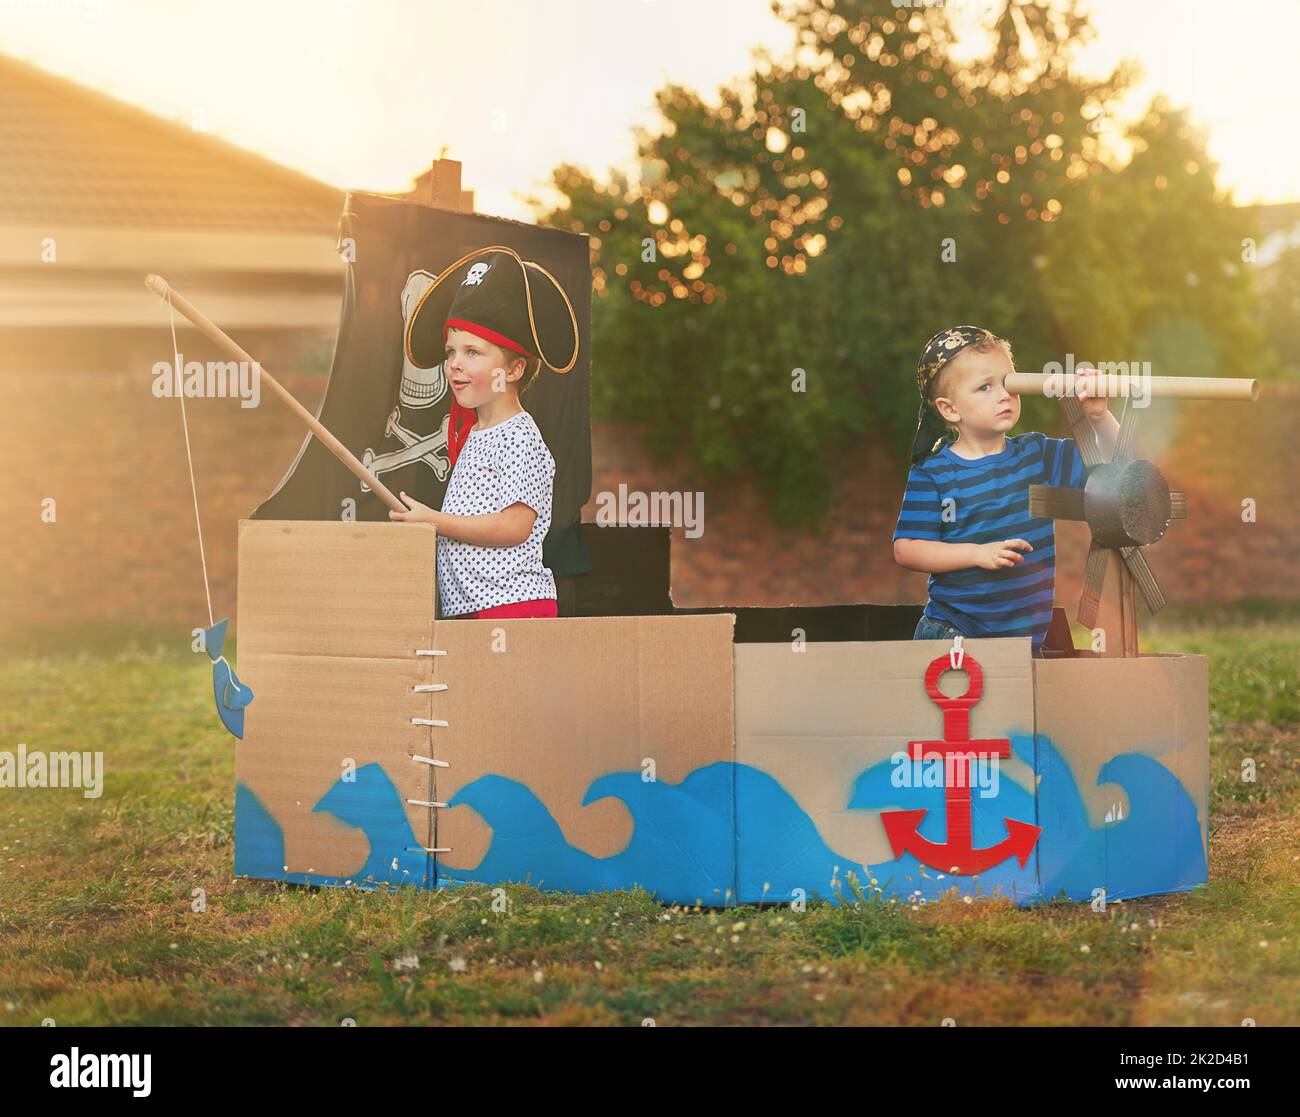 Wer braucht Spielzeug, wenn Sie Phantasie haben. Aufnahme eines niedlichen kleinen Jungen und seines Bruders, der draußen auf einem Boot aus Pappkartons Piraten spielt. Stockfoto